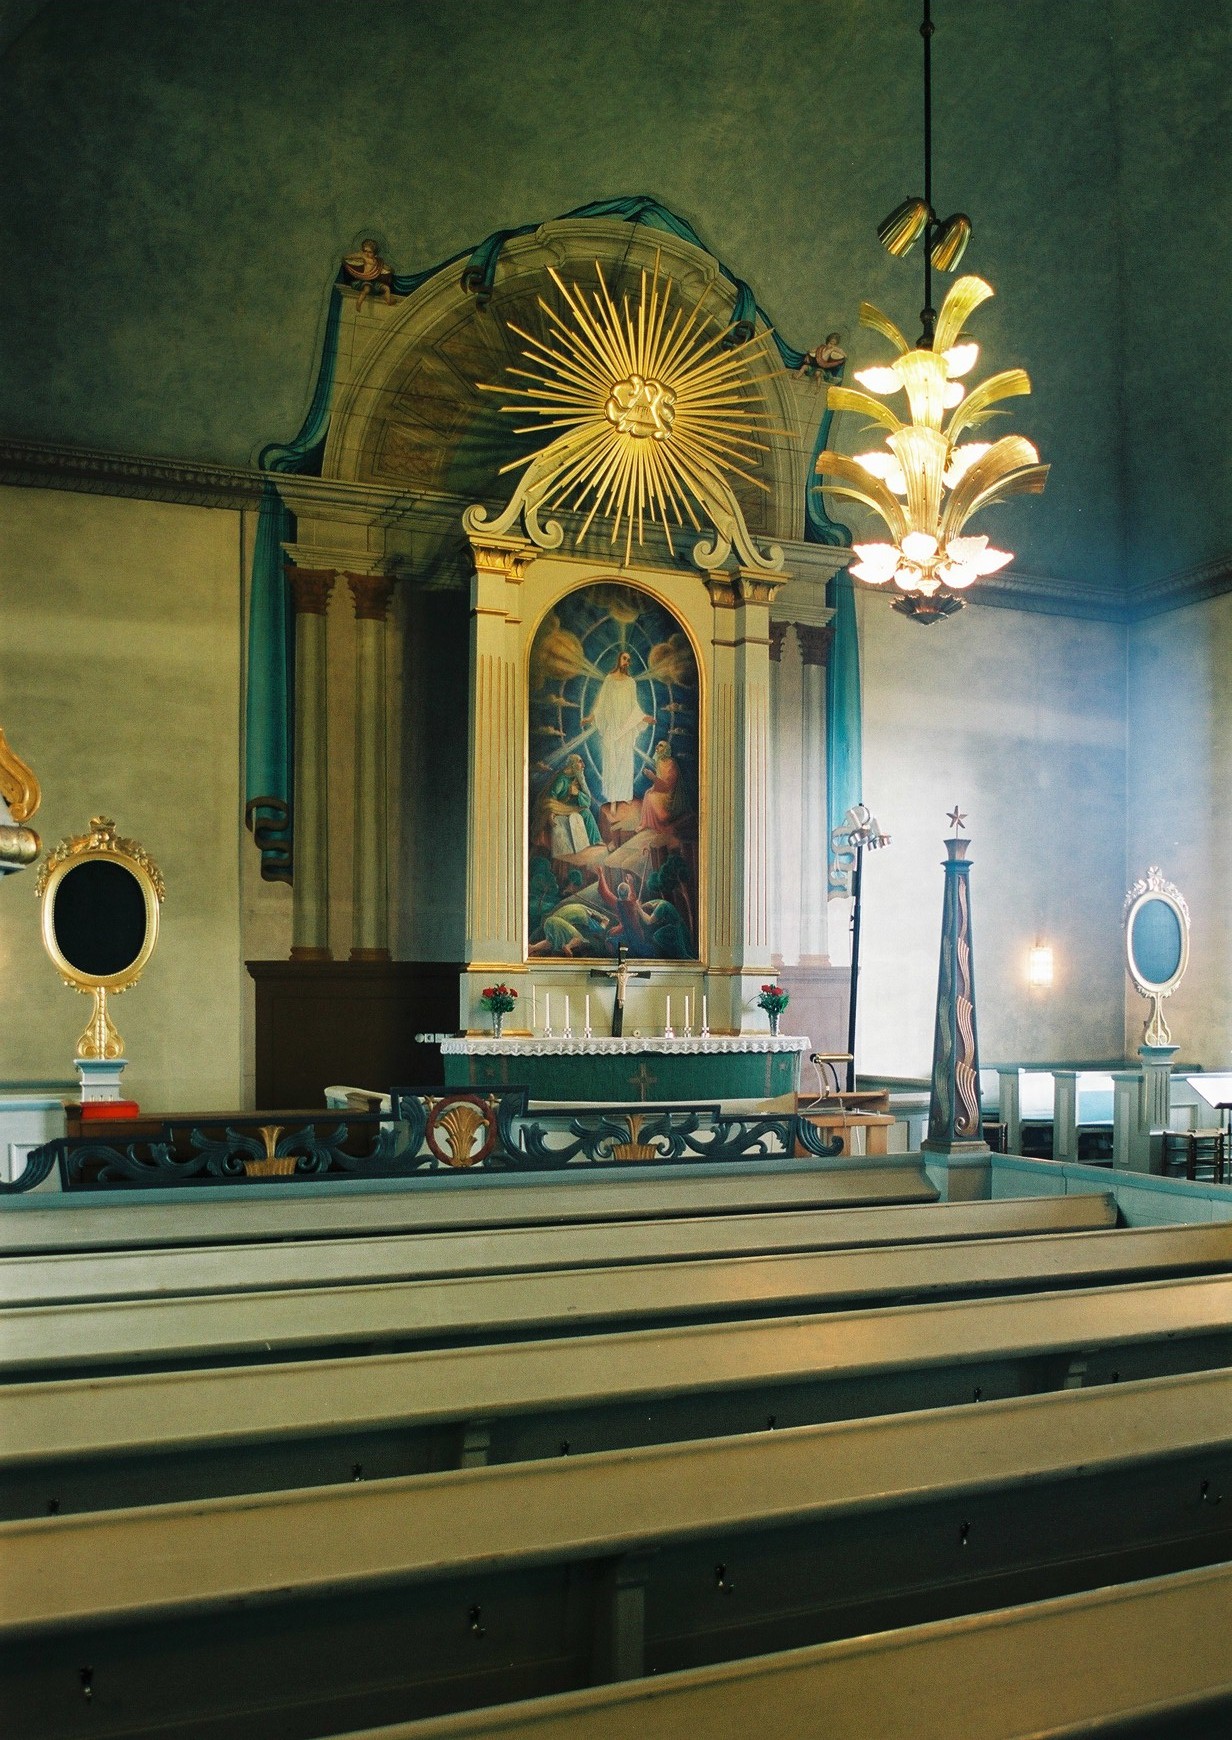 Ströms kyrka, interiör, kyrkorummet mot koret. 

Bilderna är tagna av Martin Lagergren & Emelie Petersson, bebyggelseantikvarier vid Jämtlands läns museum, i samband med inventeringen, 2004-2005.